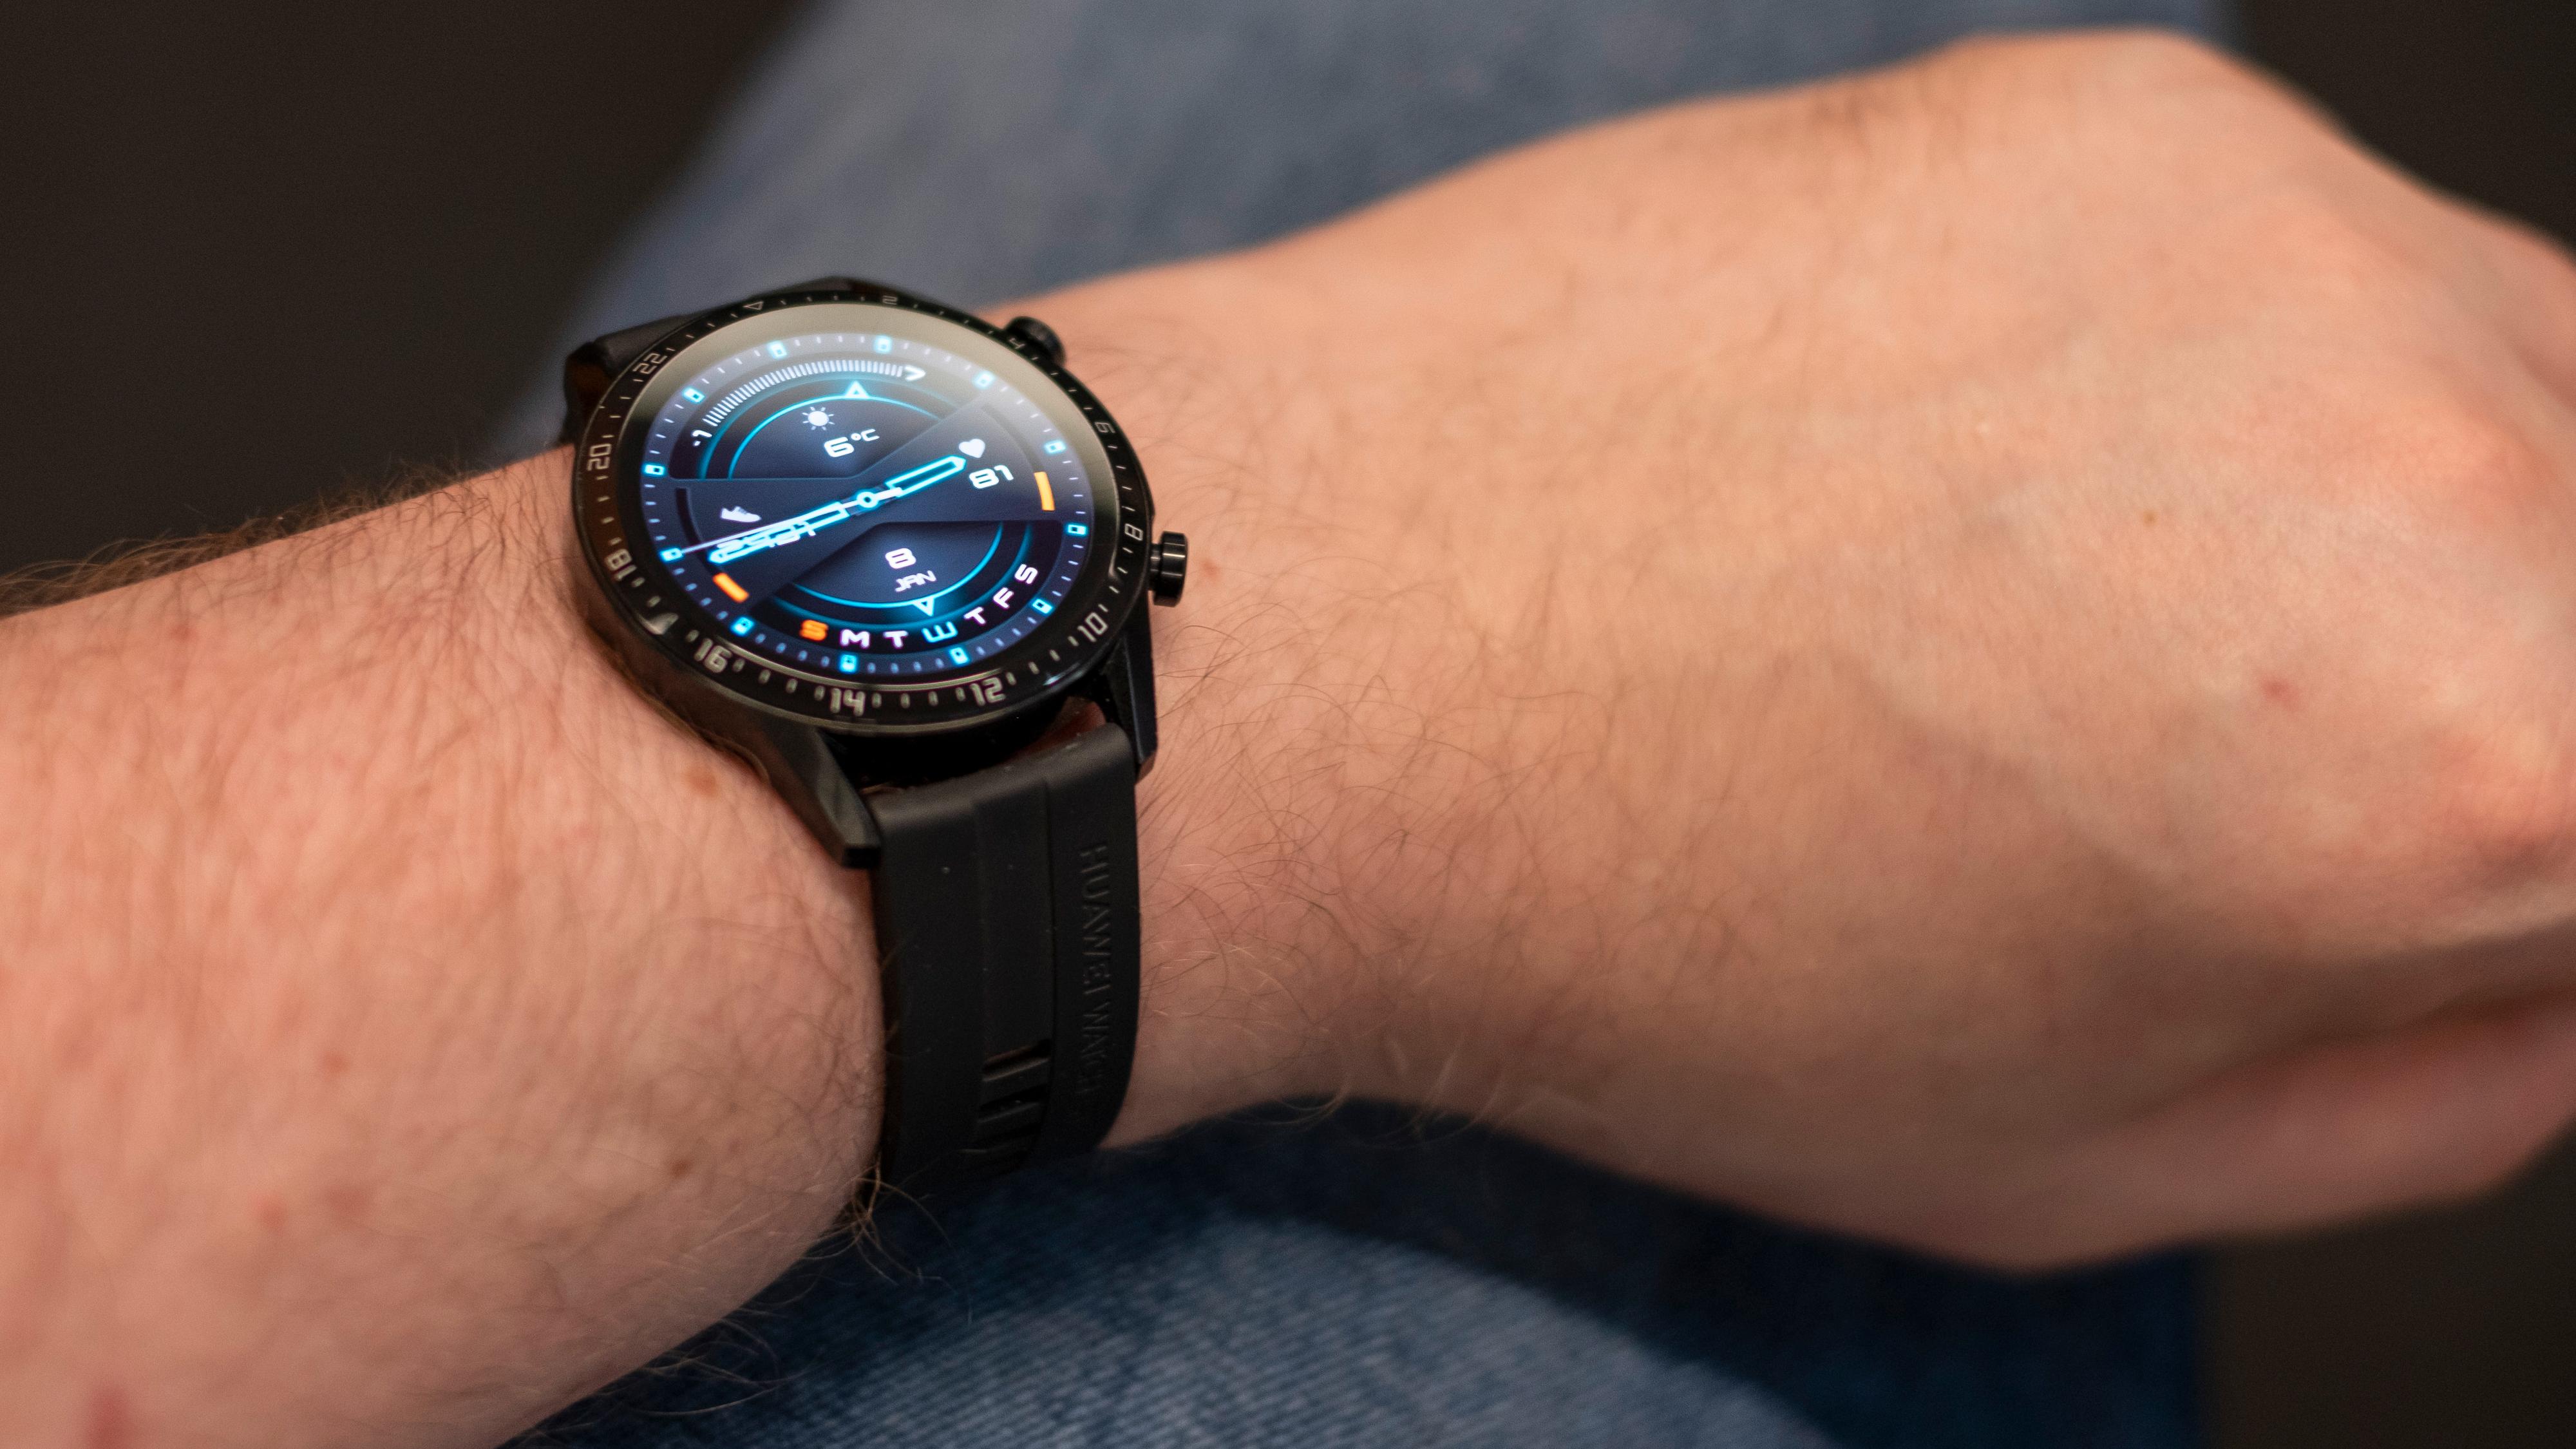 Watch GT2 fra Huawei ser lekker ut, koster lite og varer leeenge på en lading. Hvis du er interessert i å spore ting som søvnkvalitet og aktivitet er dette blant de beste alternativene på markedet.